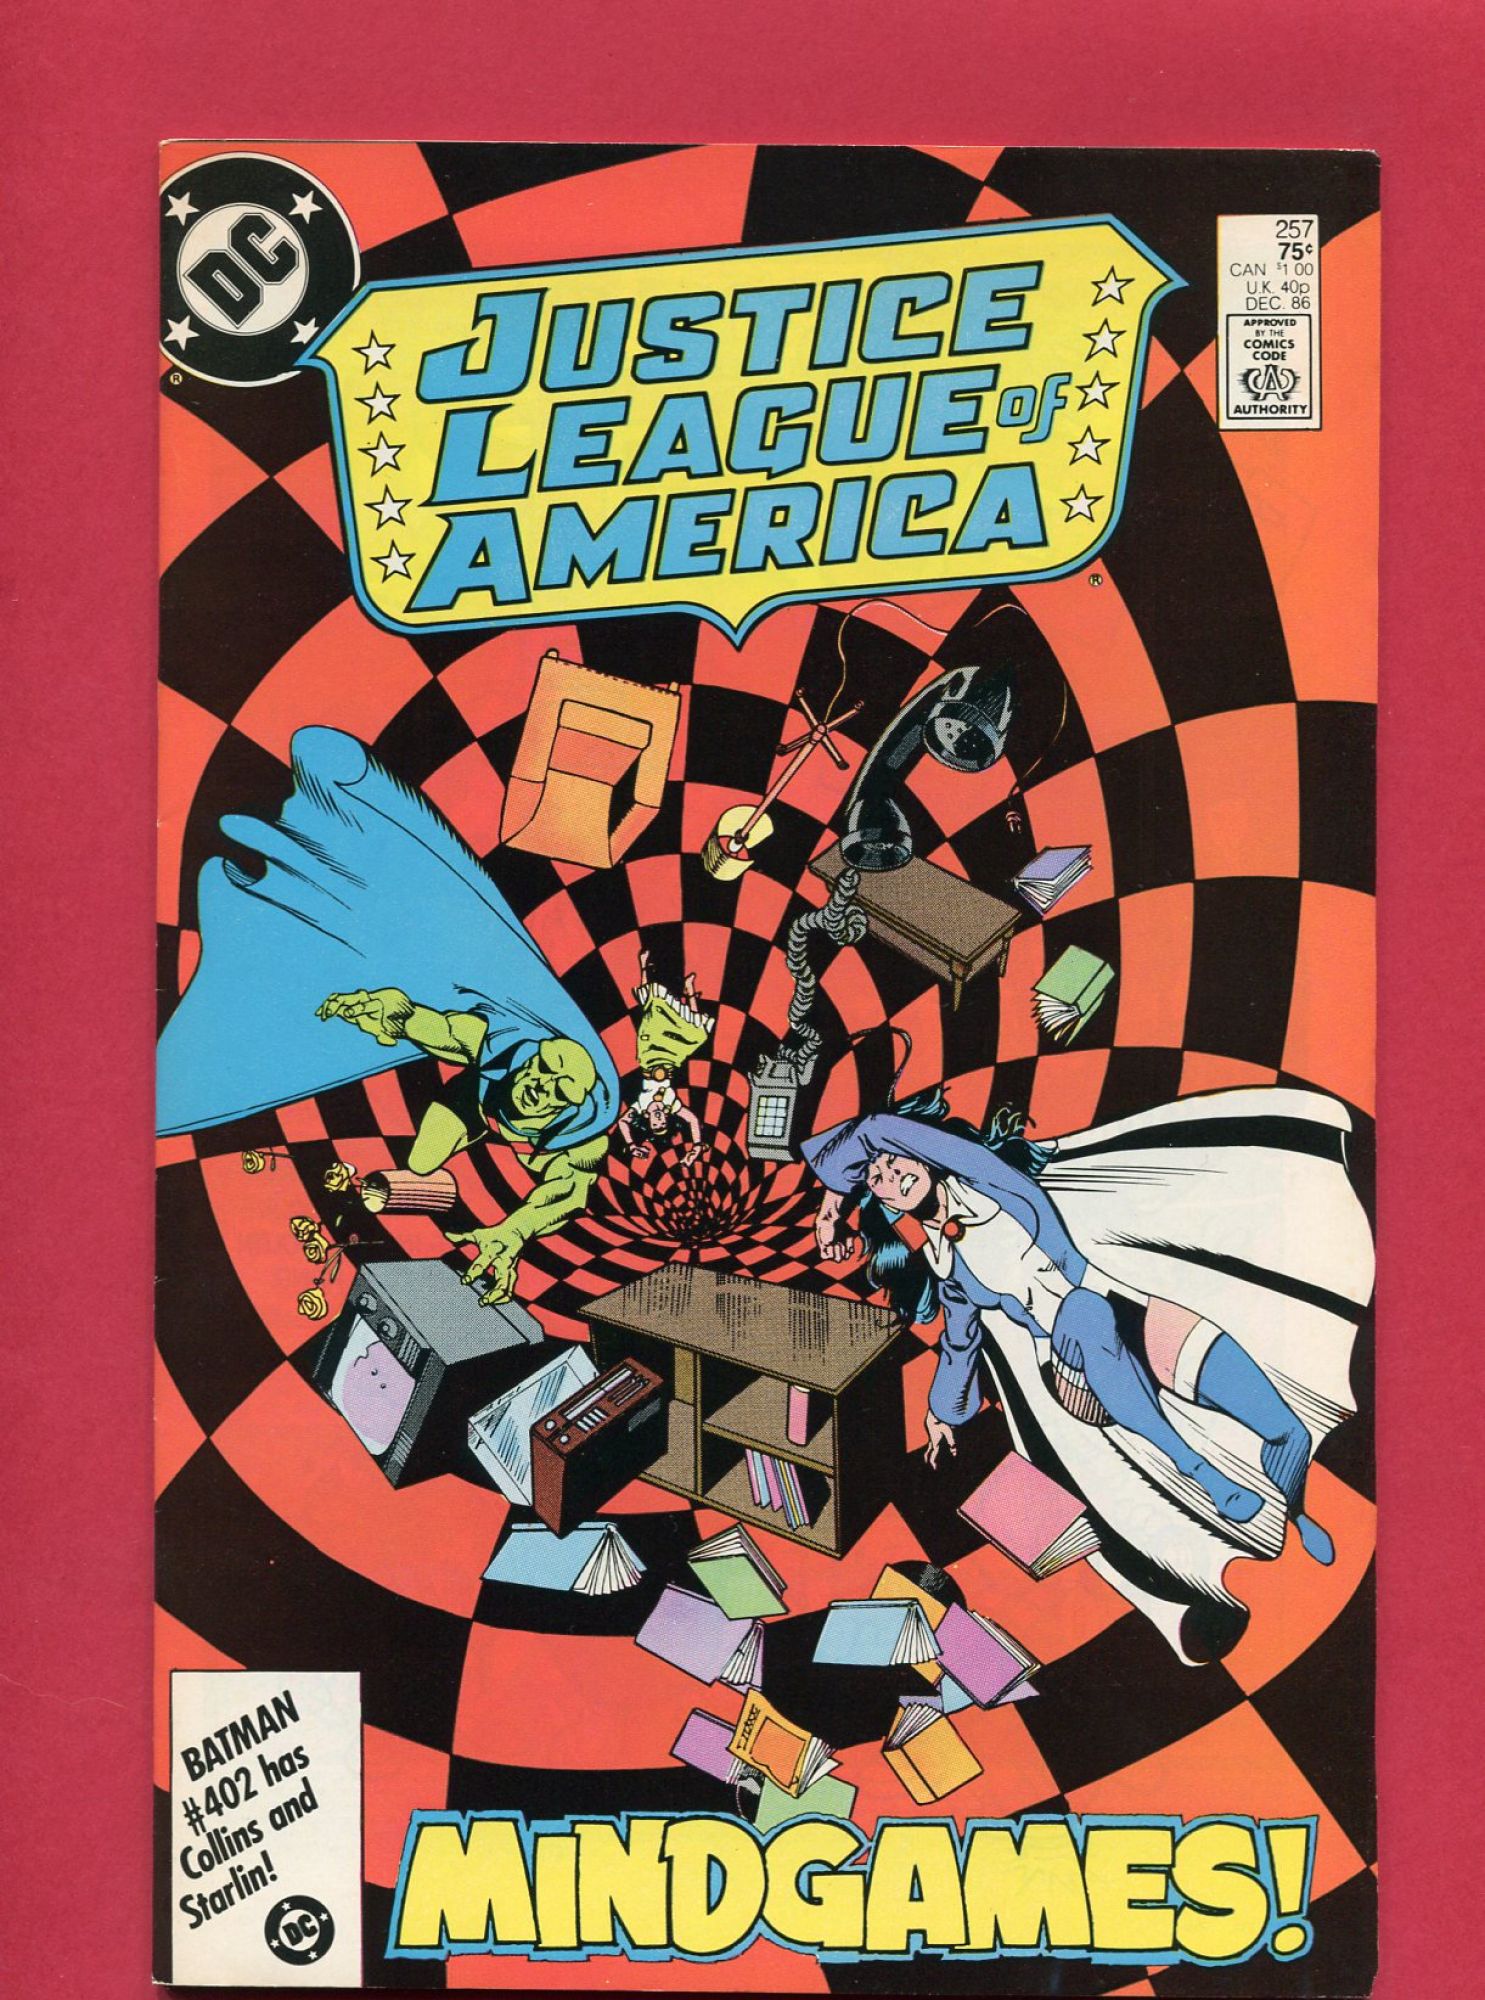 Justice League of America (Volume 1 1960) #257, Dec 1986, 9.2 NM-